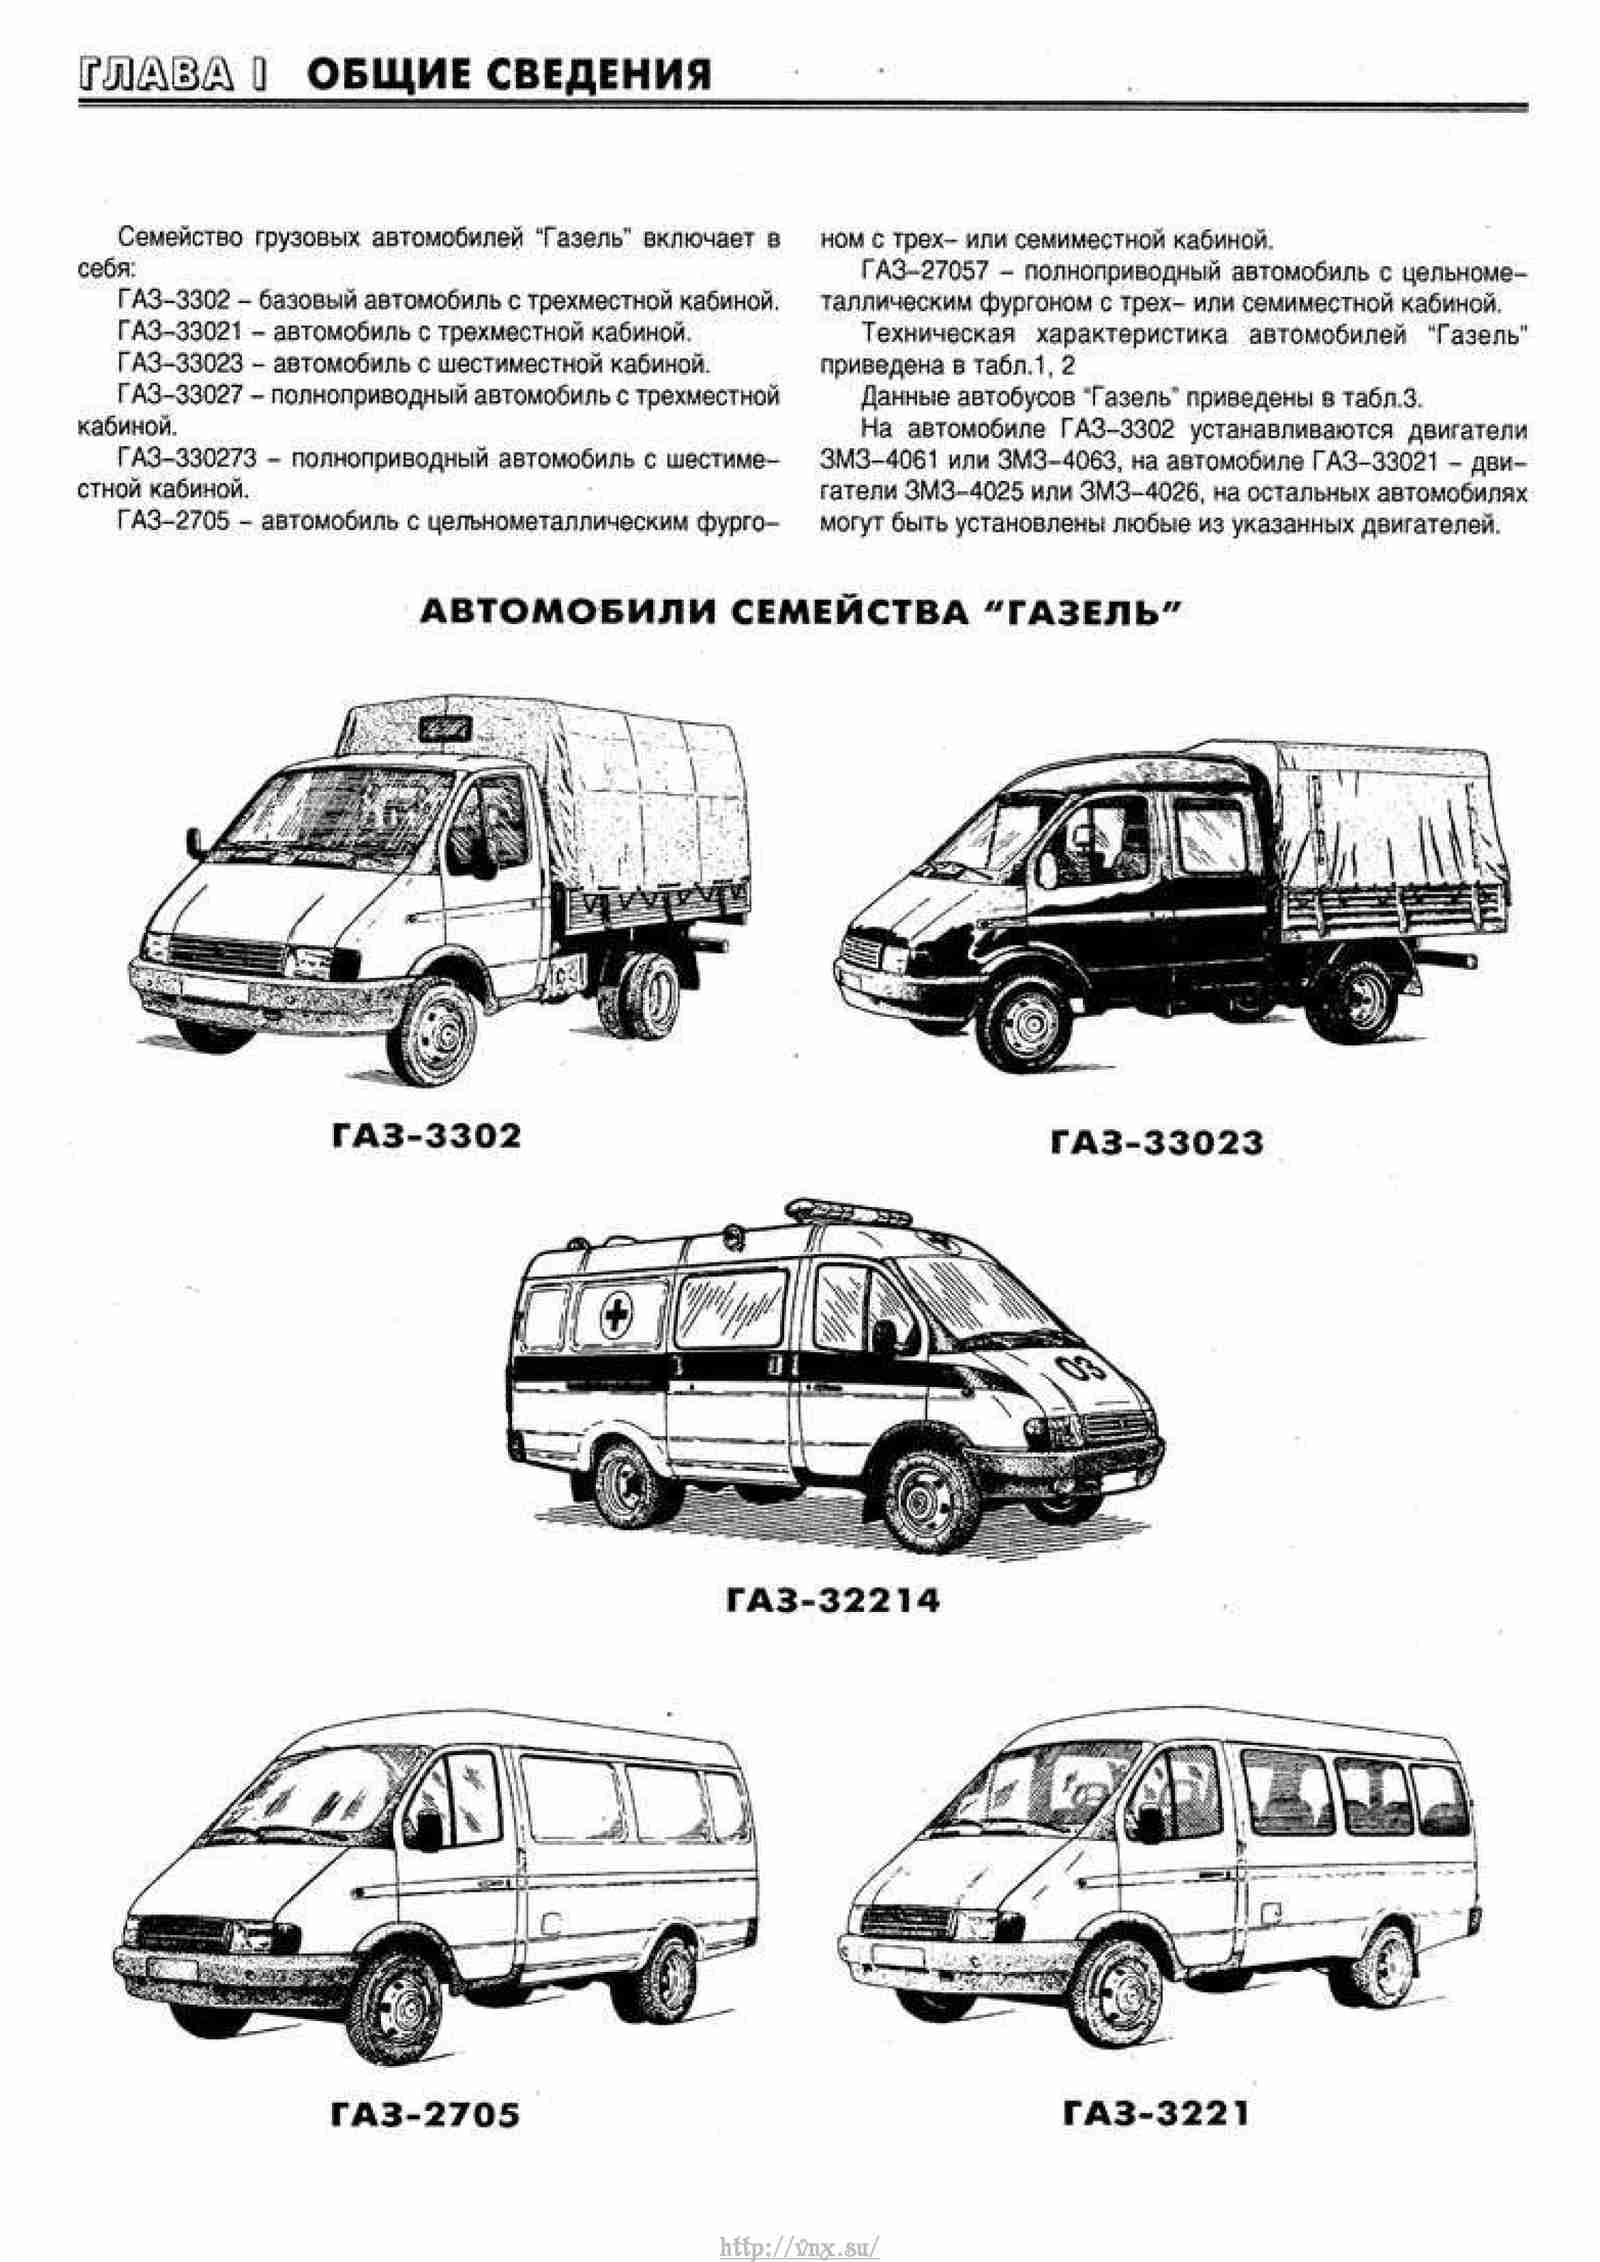 Мультимедийная версия руководства по ремонту обслуживанию и эксплуатации самых автомобилей ГАЗ-33021 -2705 ГАЗель 1994-2002 гг и с 2003 г выпуска оборудованных бензиновыми двигателями